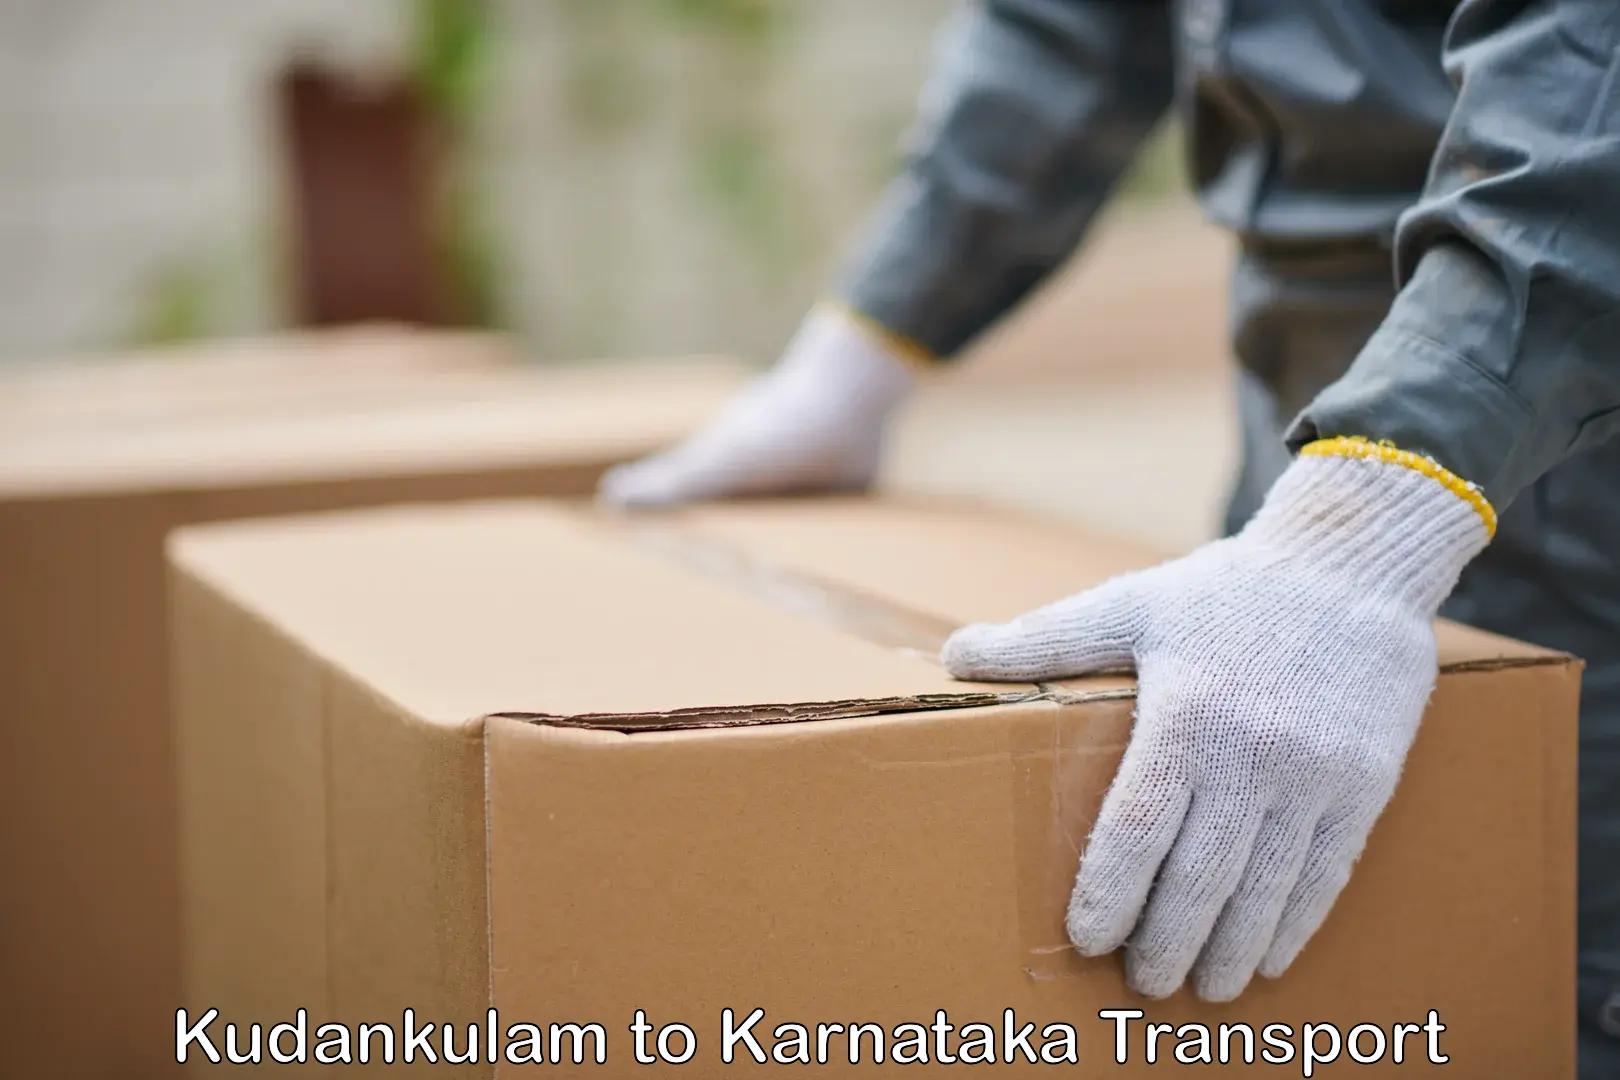 Nearest transport service Kudankulam to Mangalore